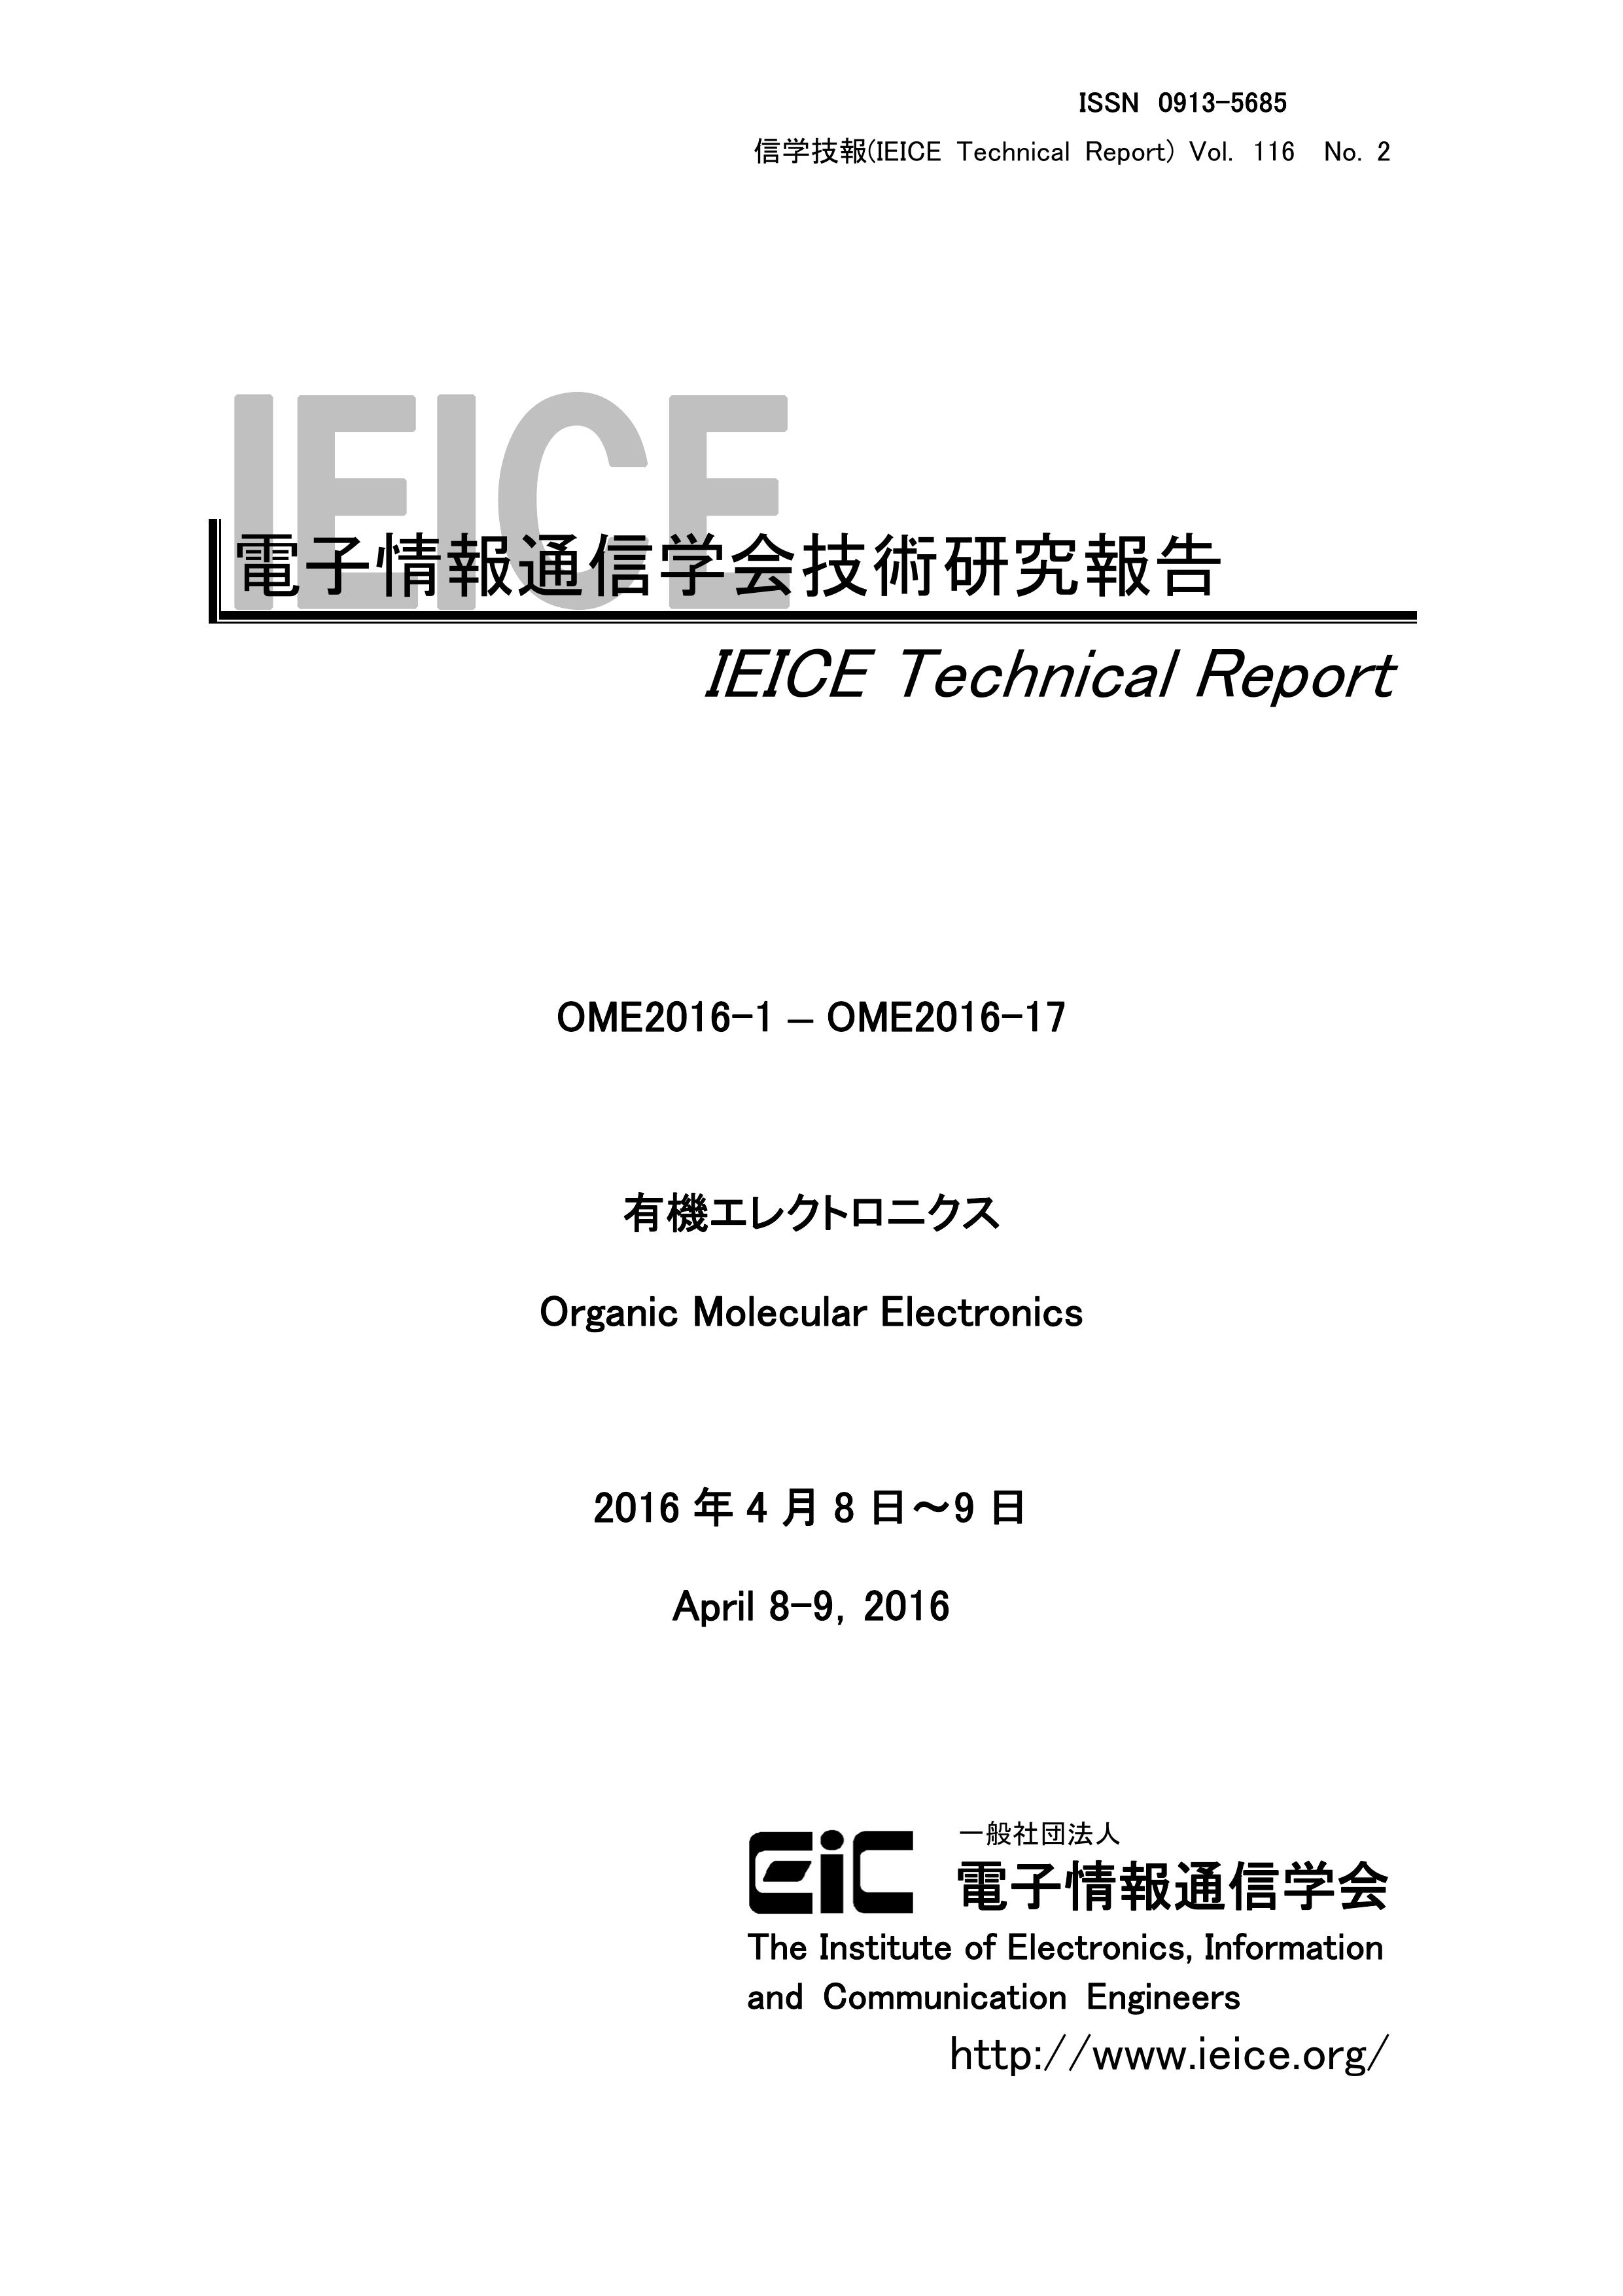 電子情報通信学会技術研究報告, vol 116, no 2, 2016